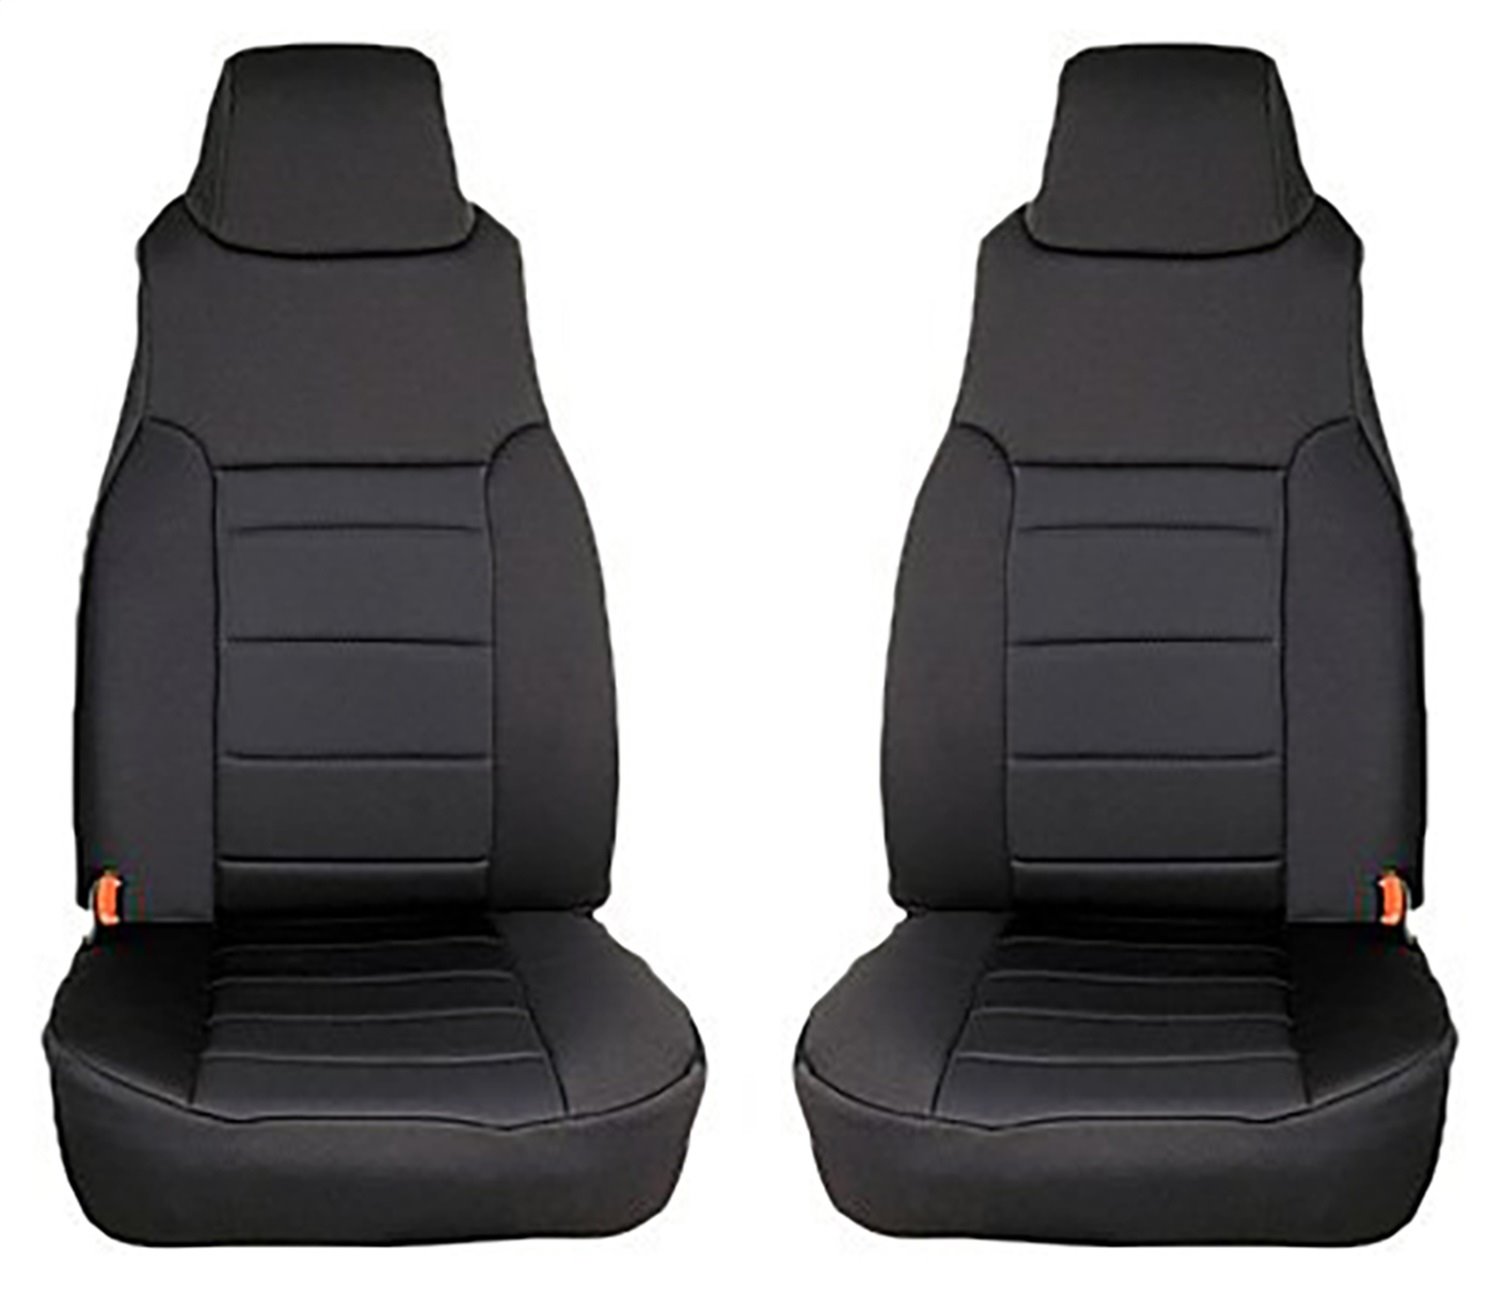 Neoprene Front Seat Covers for 1997-2002 TJ Wrangler [Black]